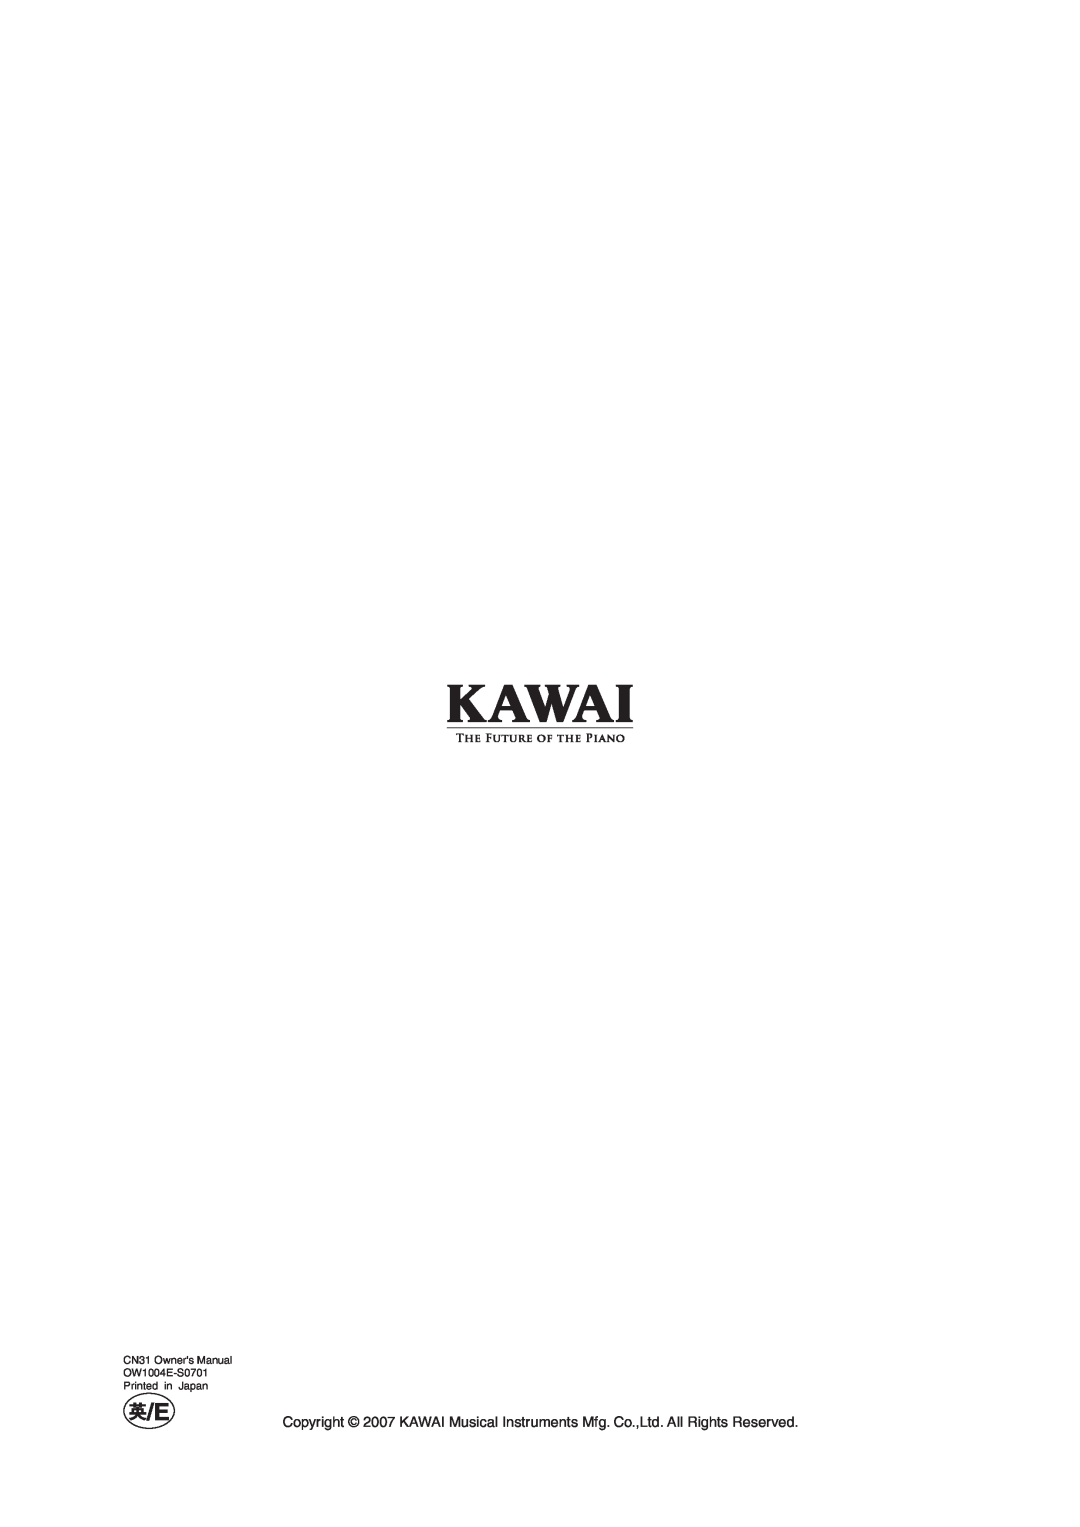 Kawai manual CN31 Owners Manual OW1004E-S0701 Printed in Japan 